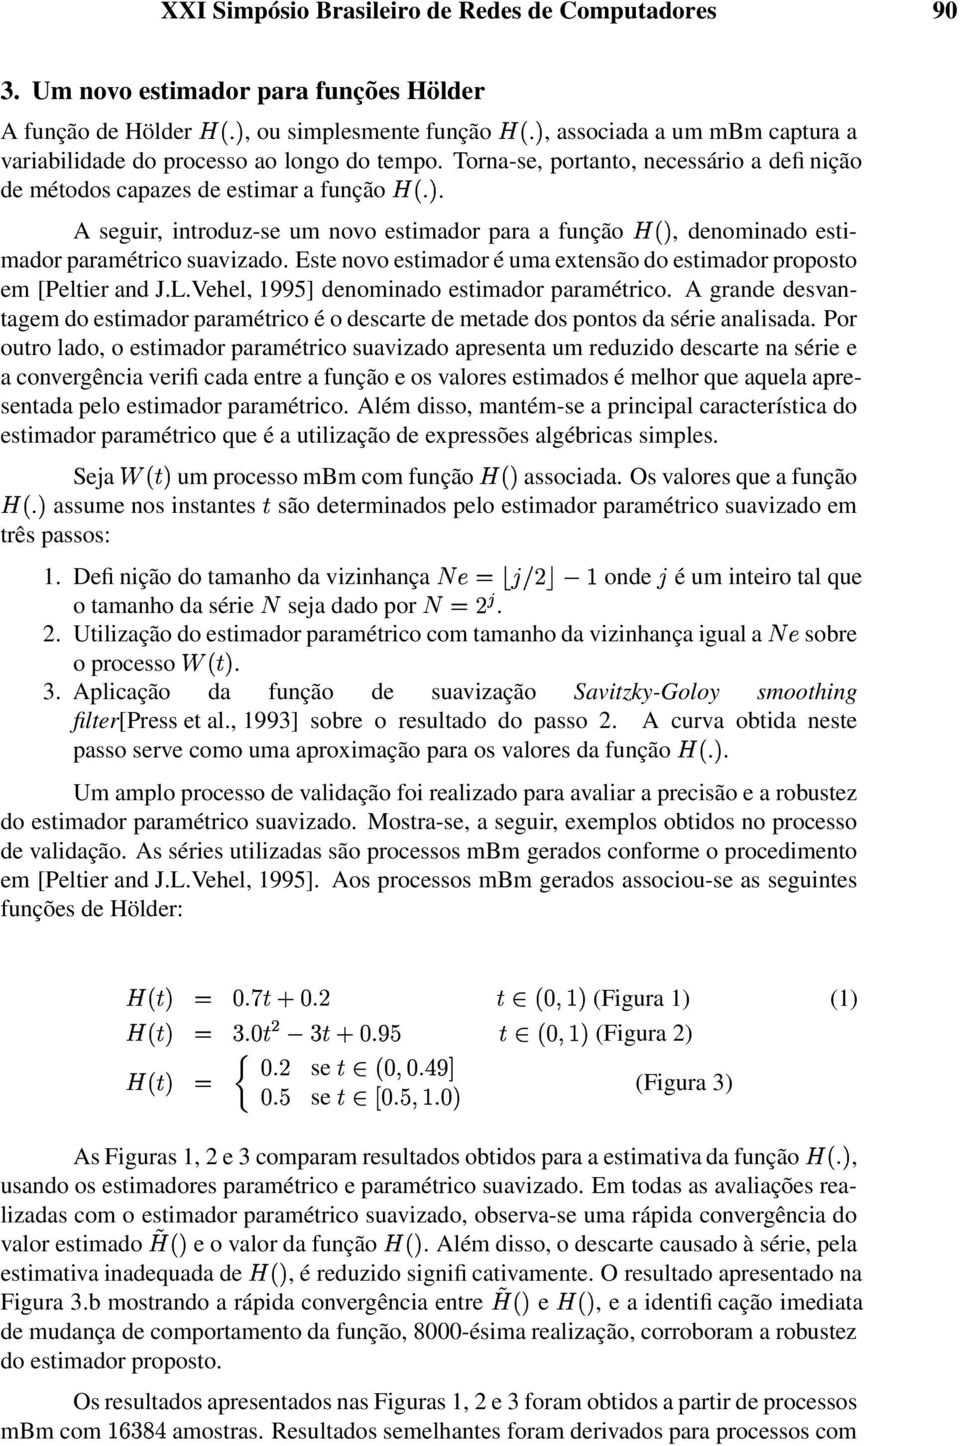 Estenovo estimador éumaextensão do estimadorproposto em [Peltier and J.L.Vehel 1995] denominado estimador paramétrico.